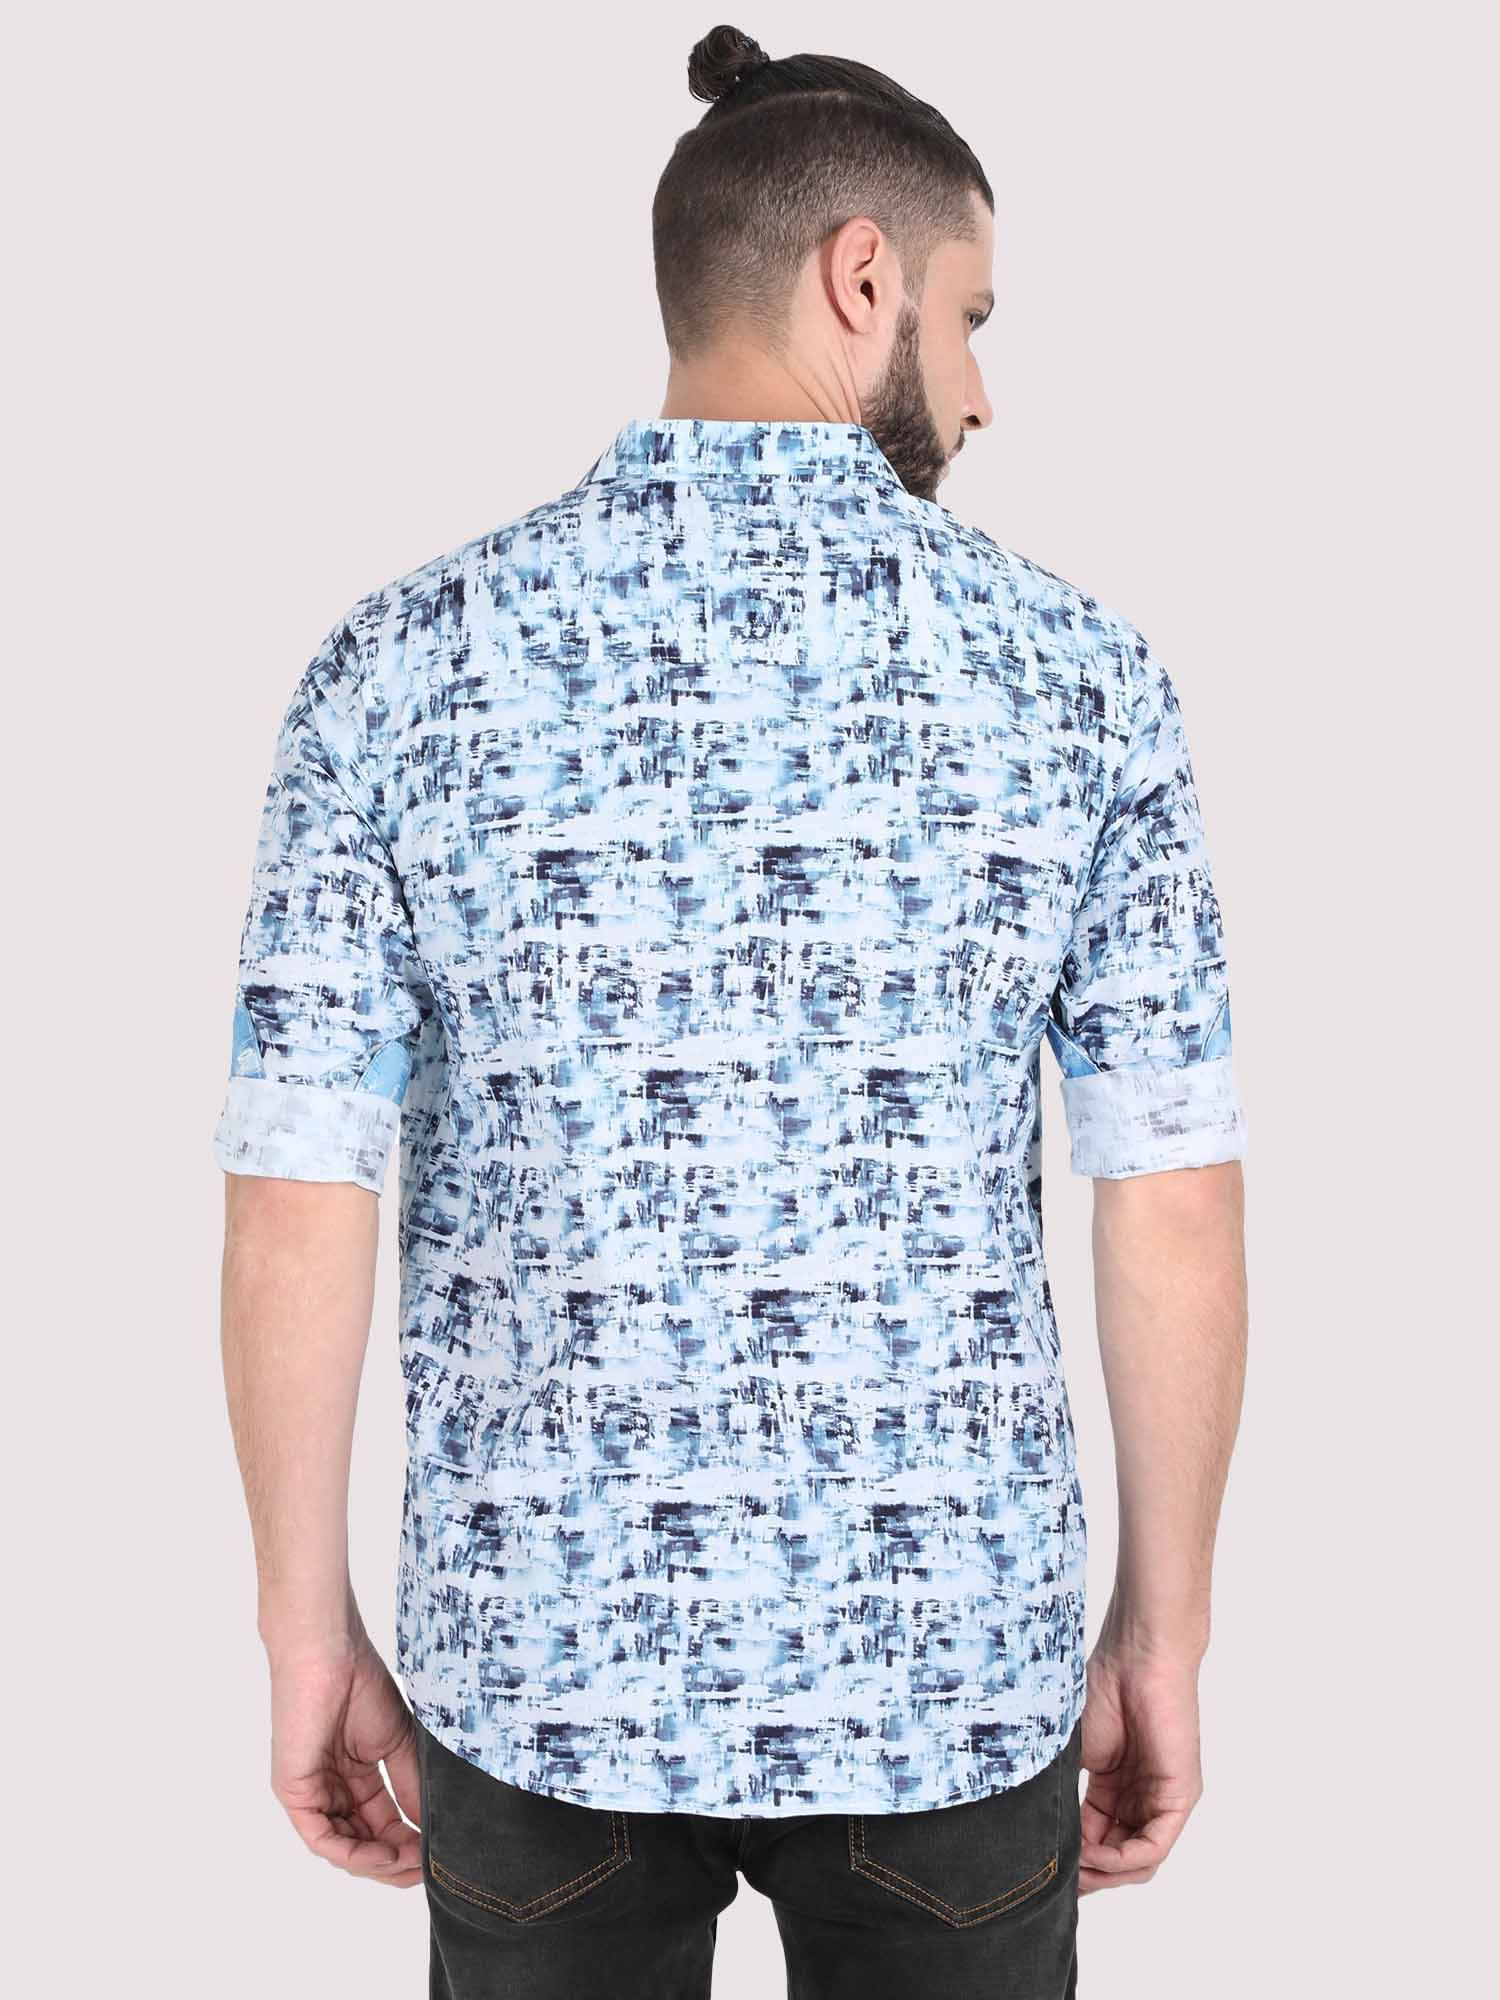 Light Mess Digital Printed Shirt - Guniaa Fashions